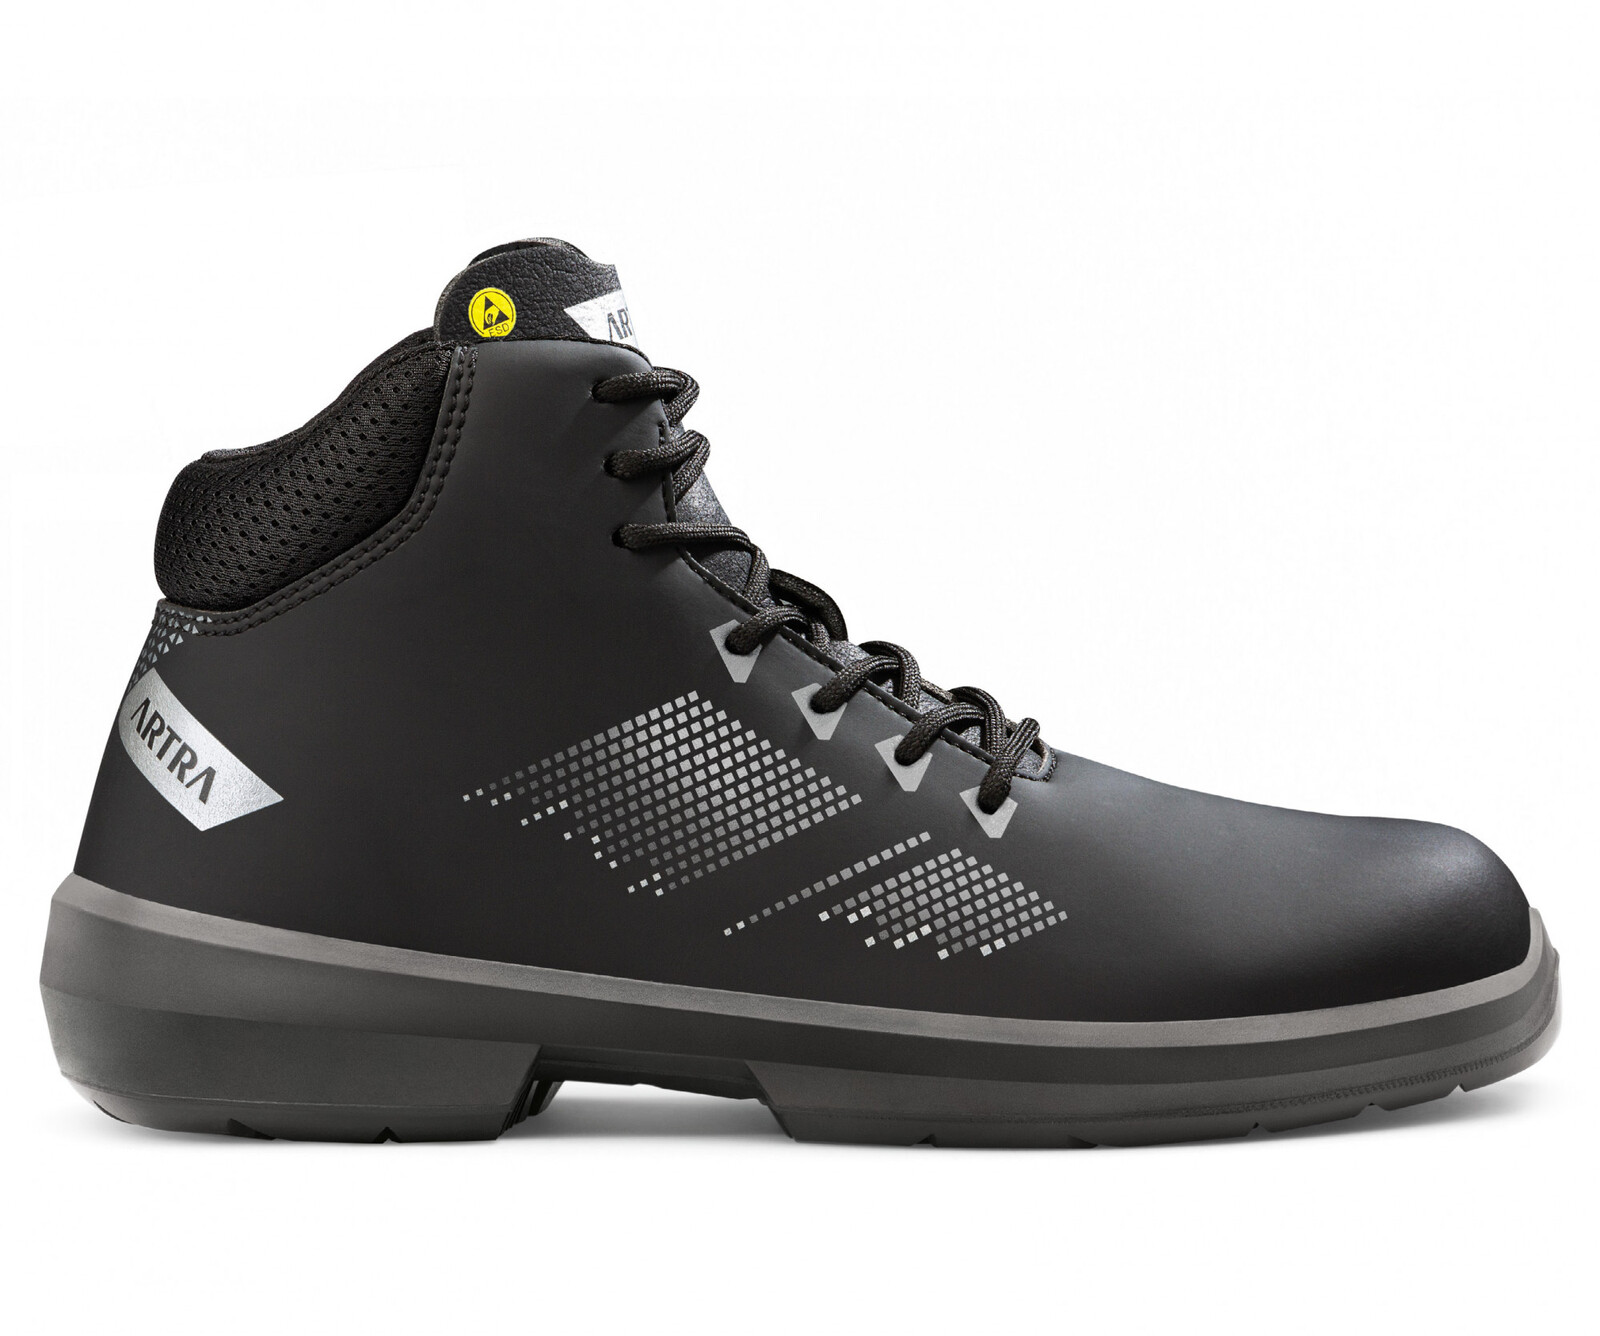 Zimná bezpečnostná členková obuv Artra Arrival 855 676560 S3 CI SRC ESD MF - veľkosť: 37, farba: čierna/sivá